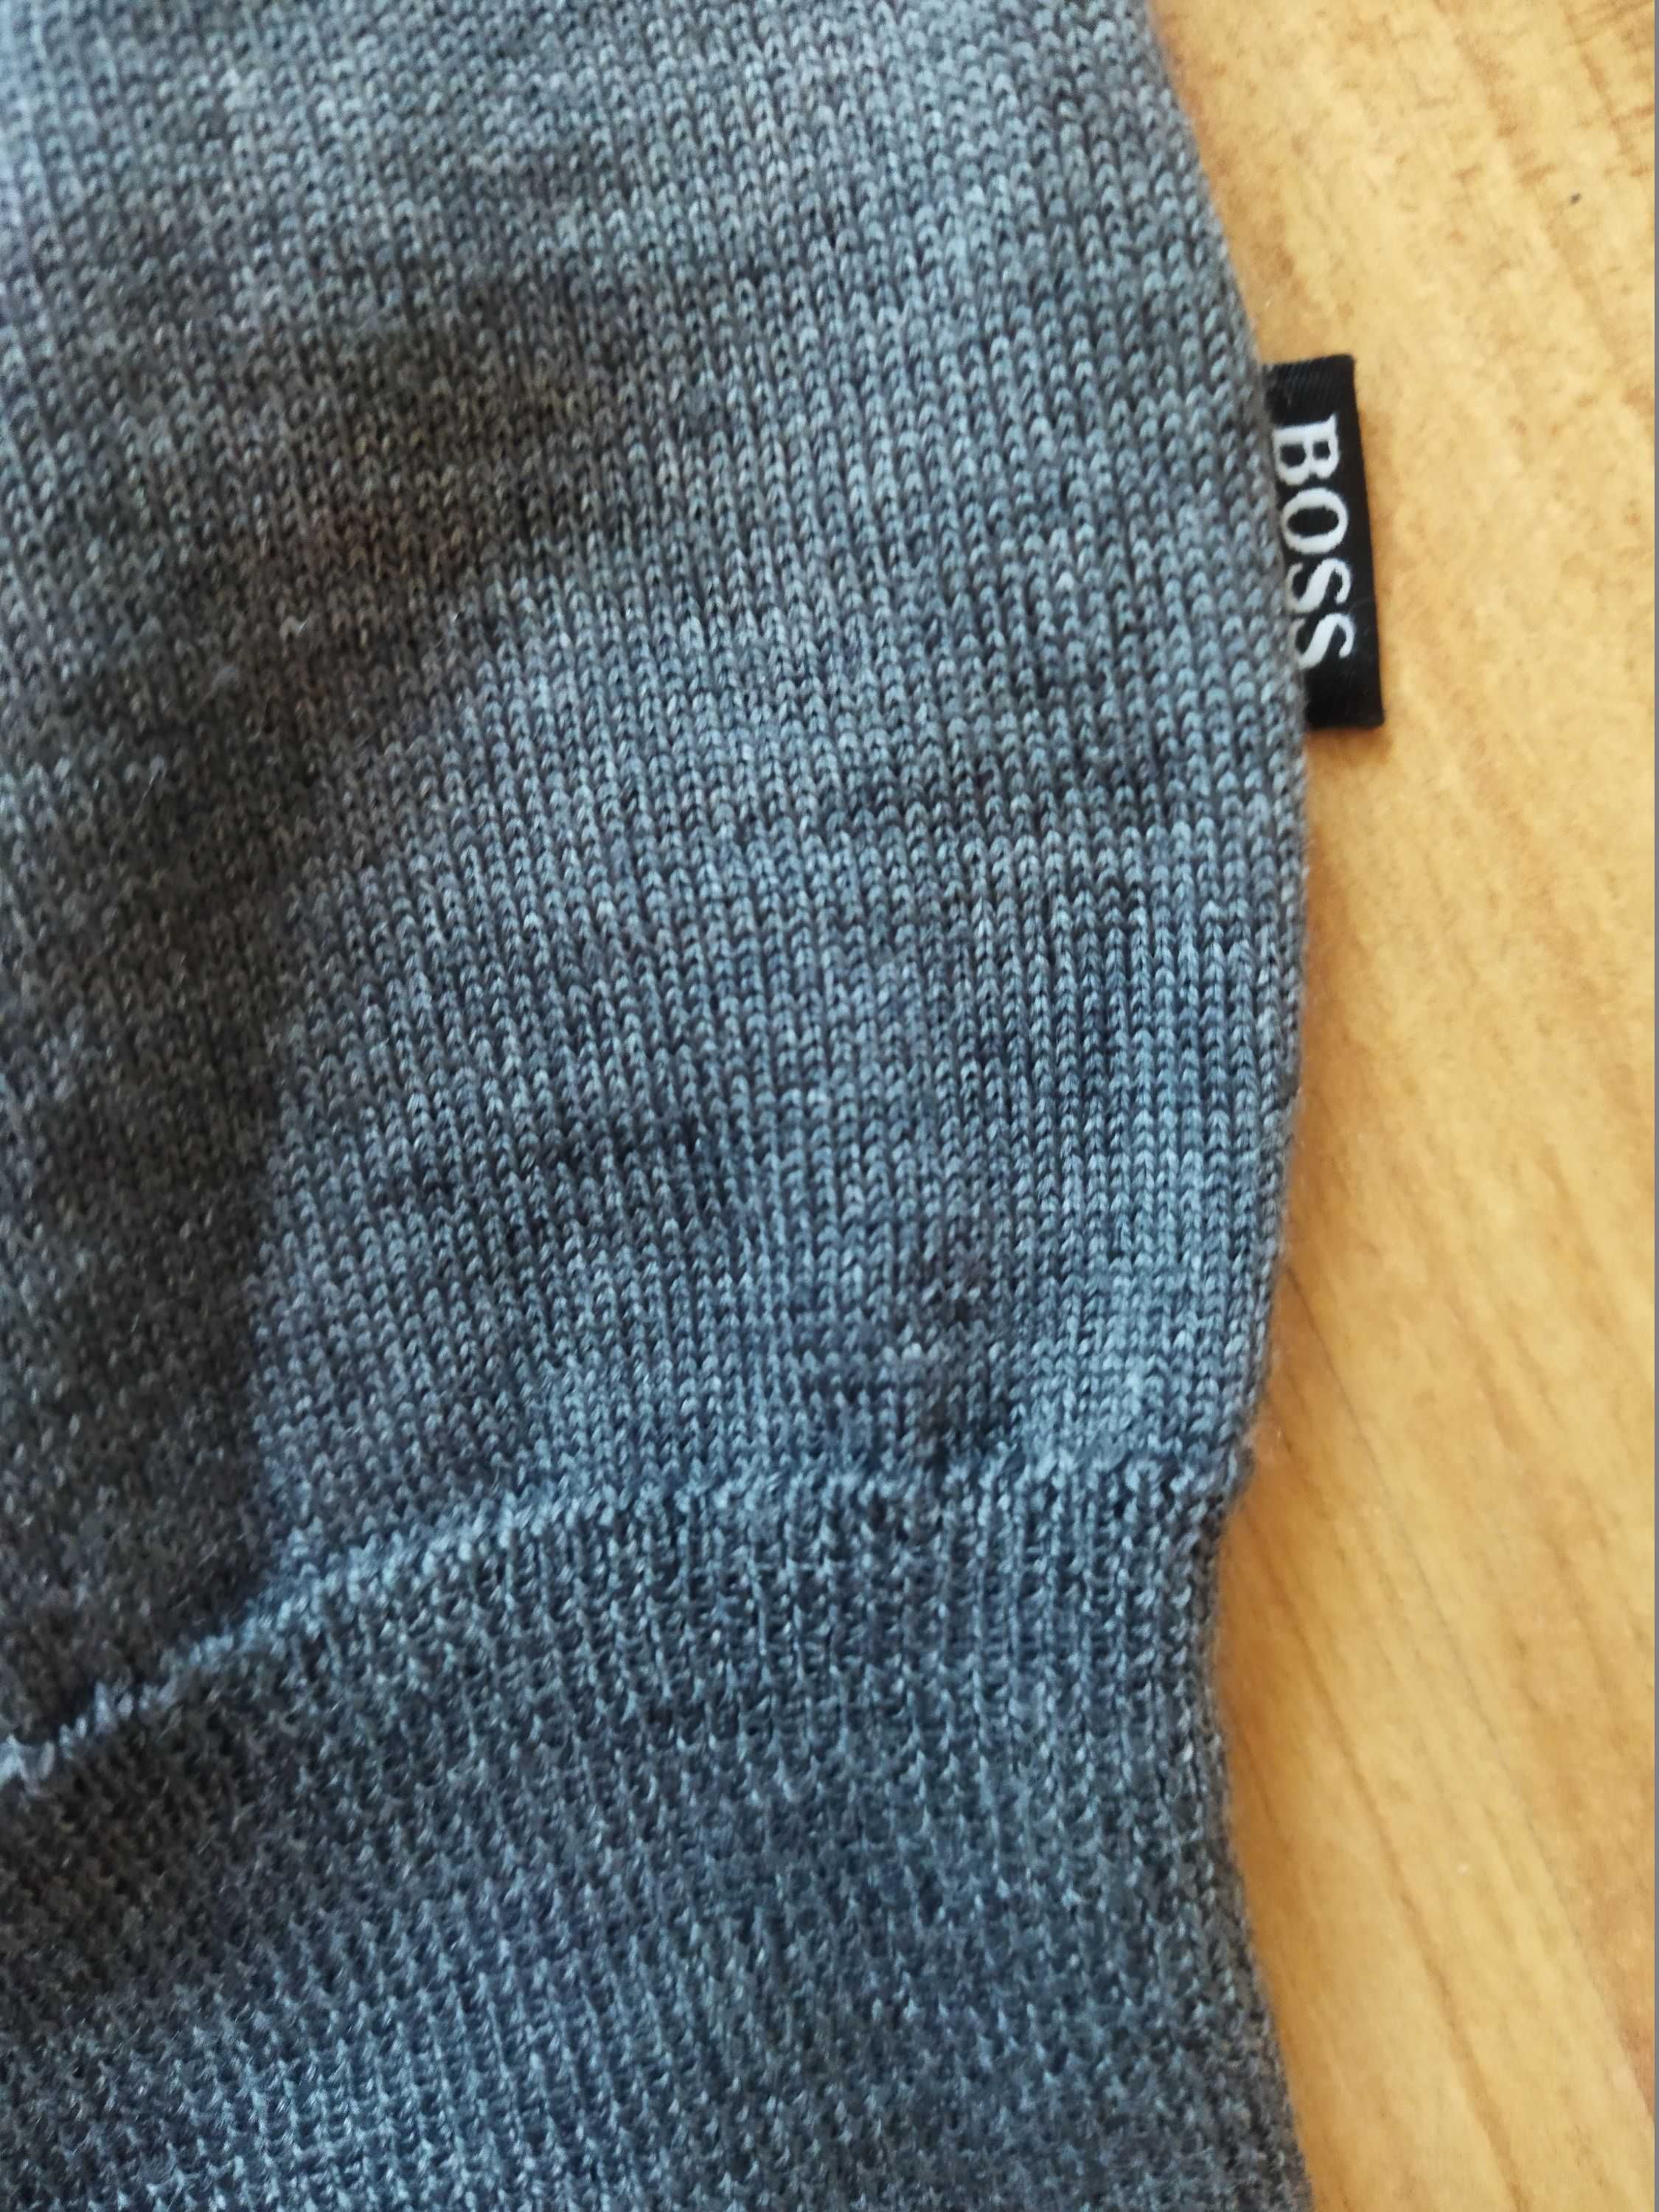 Свитер-пуловер Hugo Boss (Германия),шерсть,оригинал,новый,р-р 46